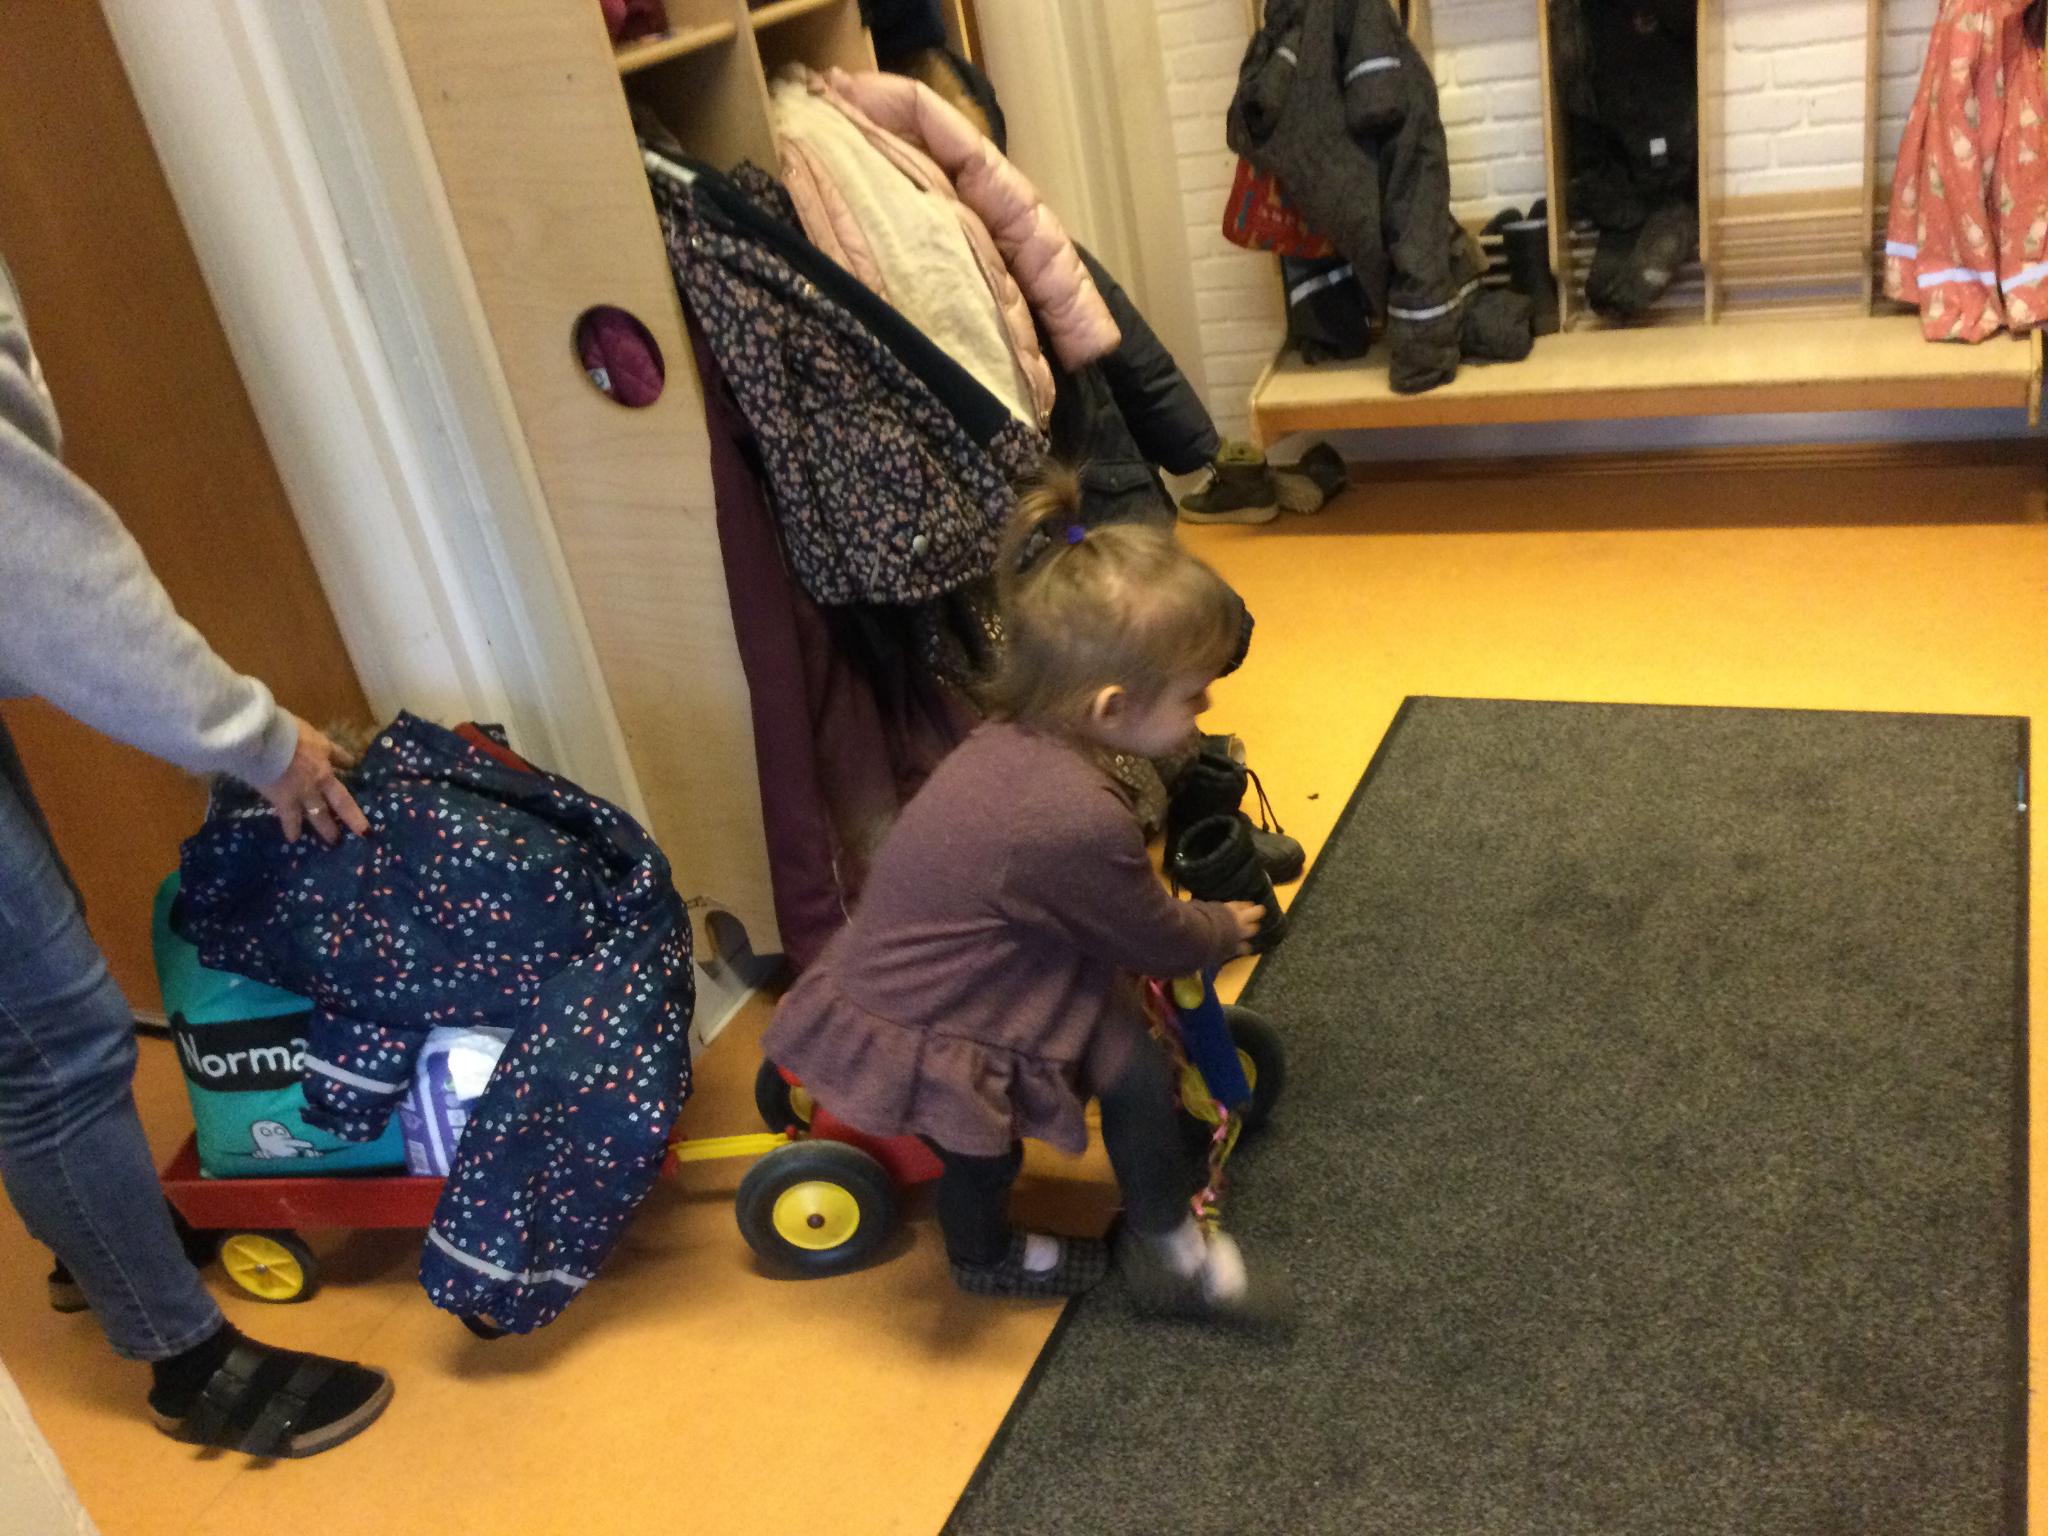 Pige kører på motorcykel i børnehave.